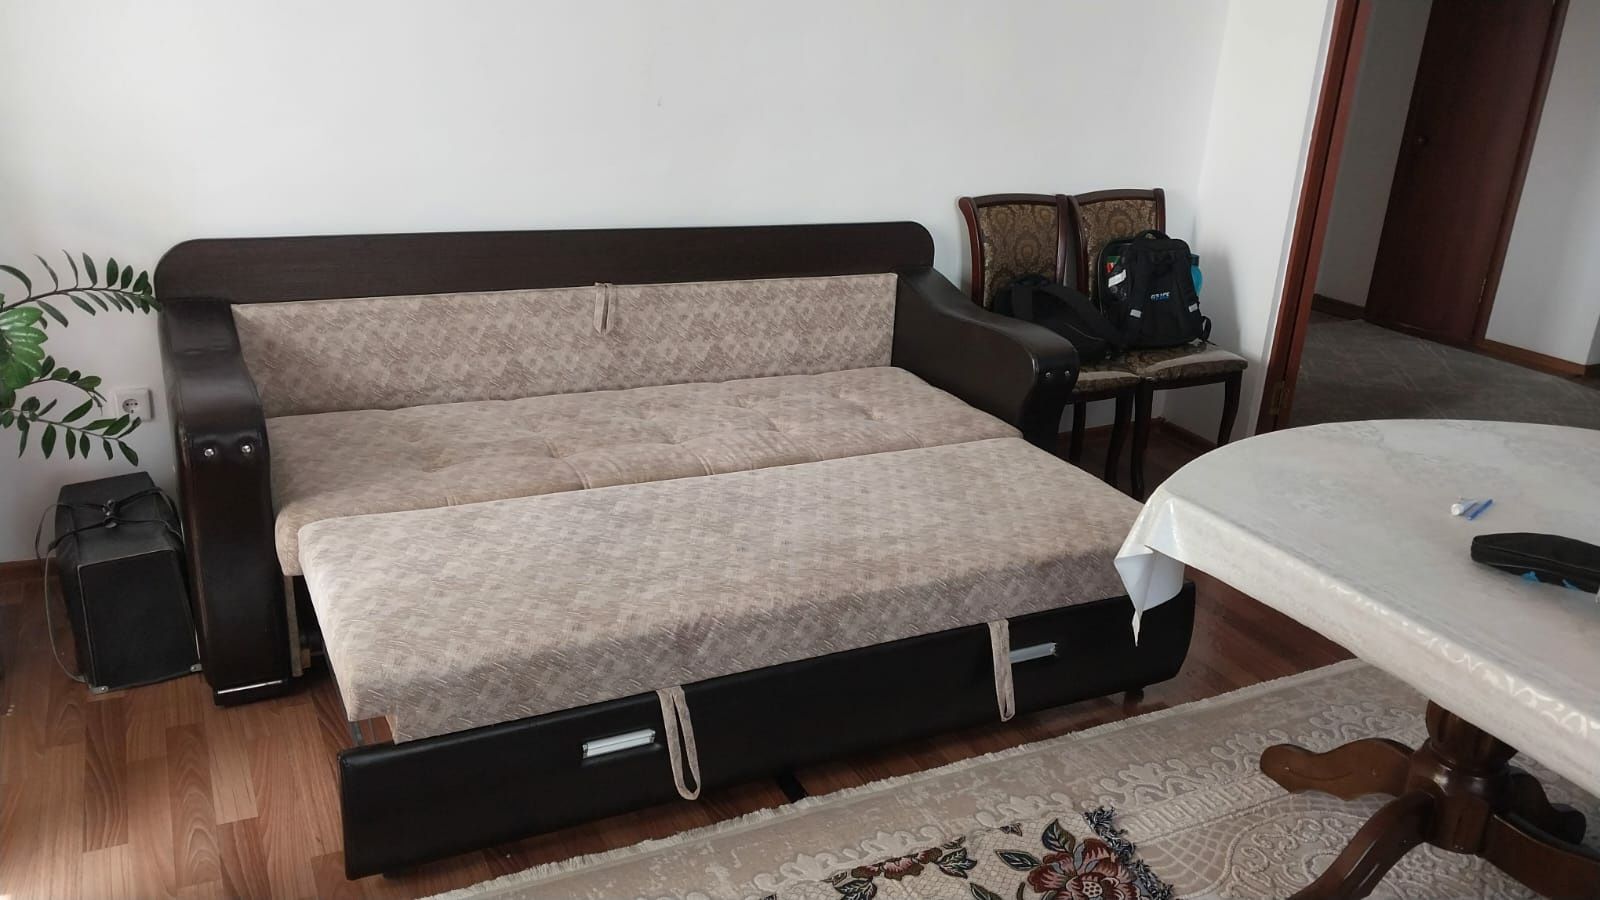 Продам диван 3 в 1(кровать, стол)